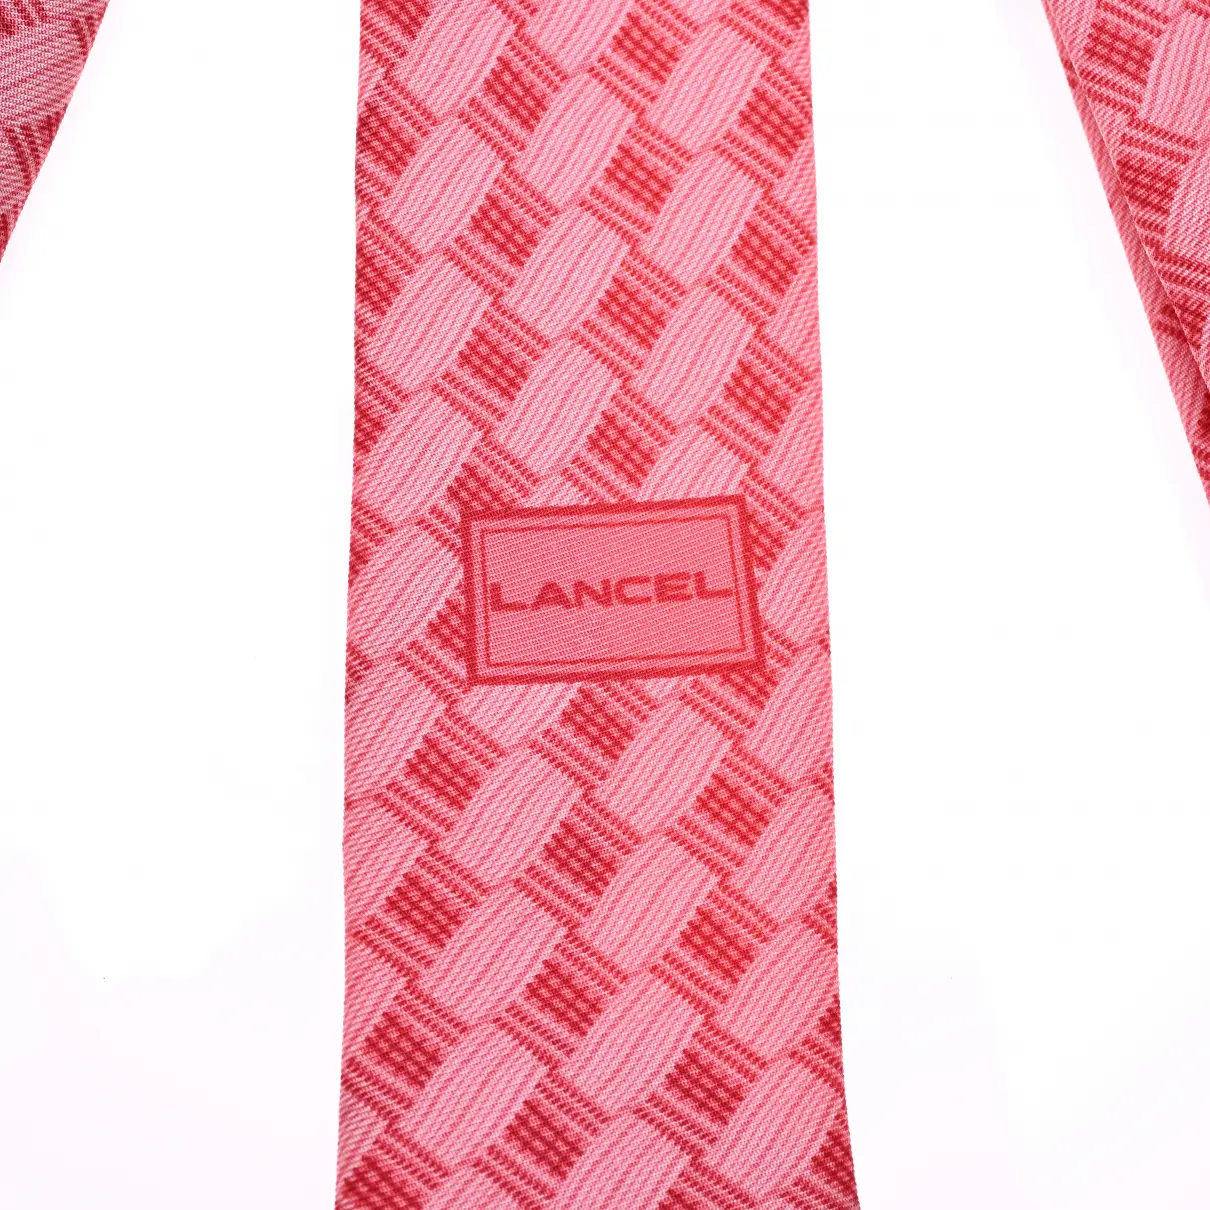 Silk tie Lancel